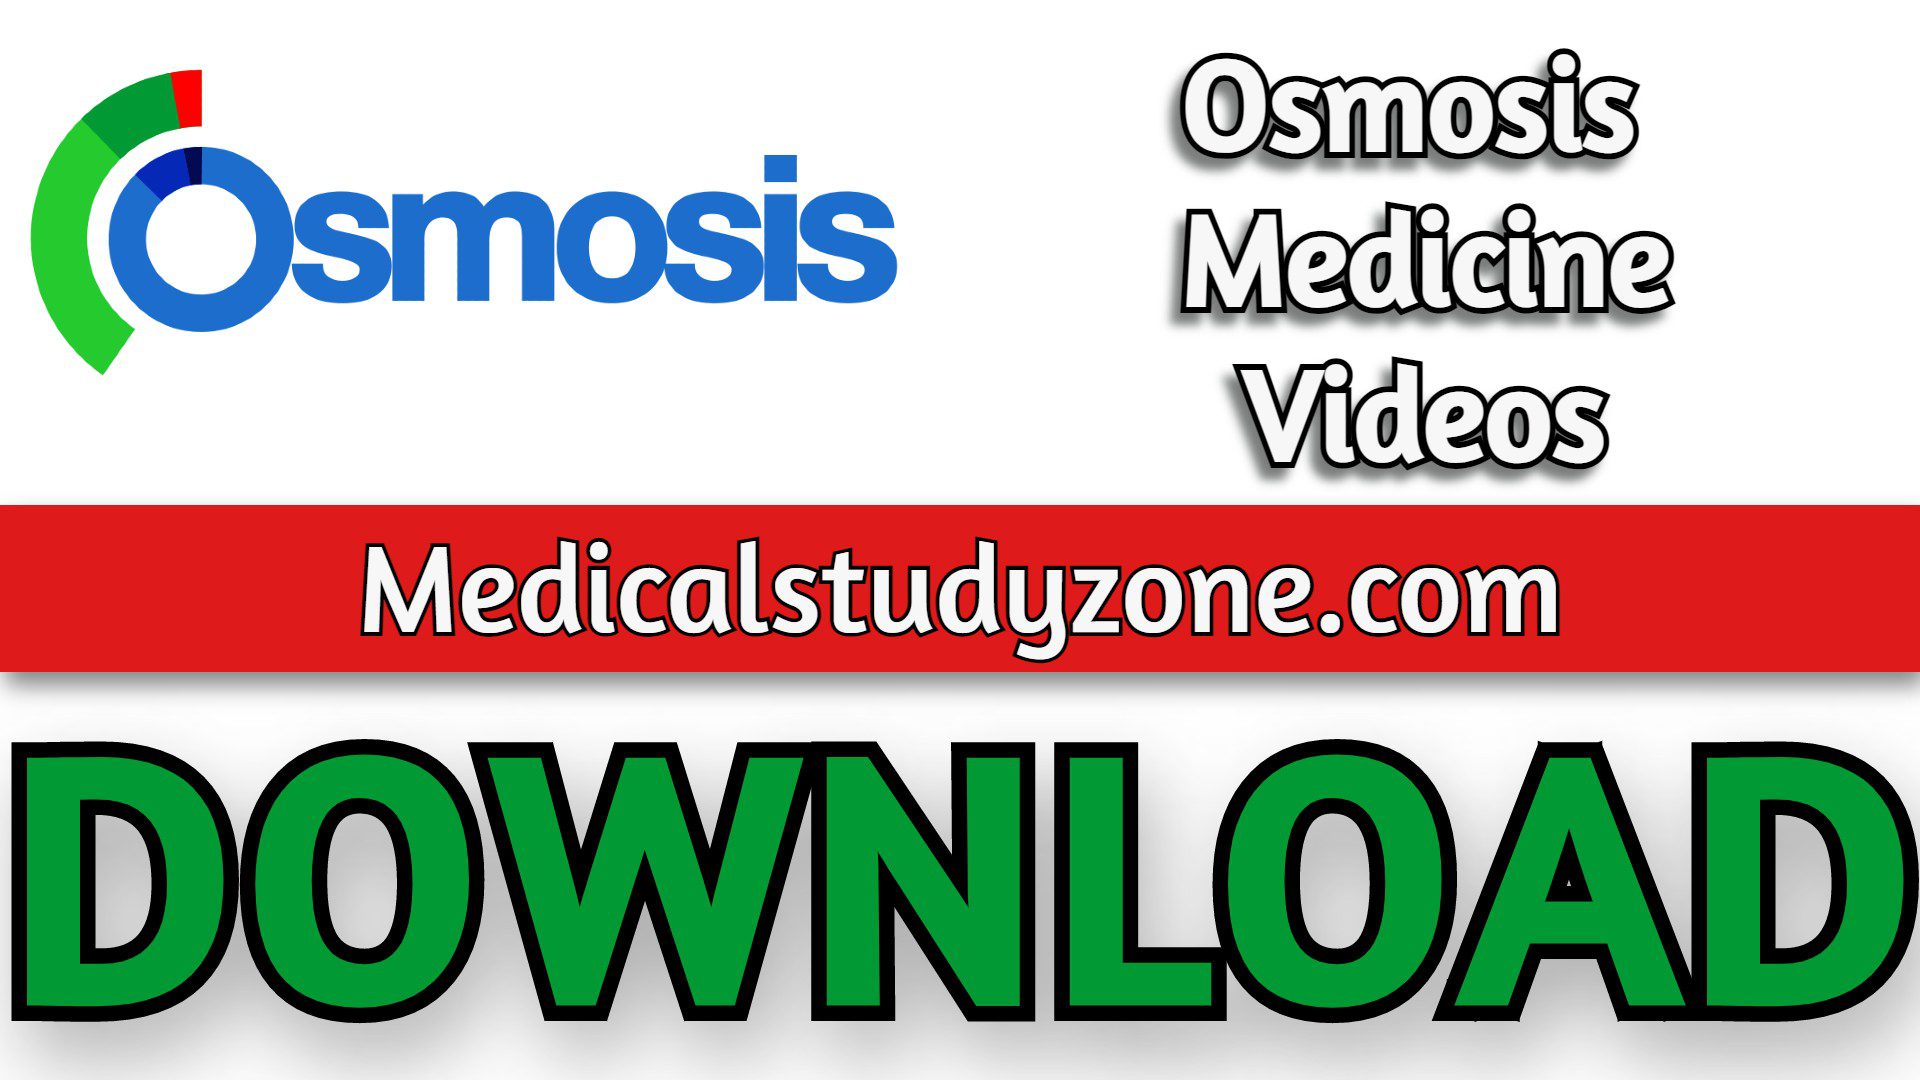 Osmosis Medicine Videos 2022 Free Download